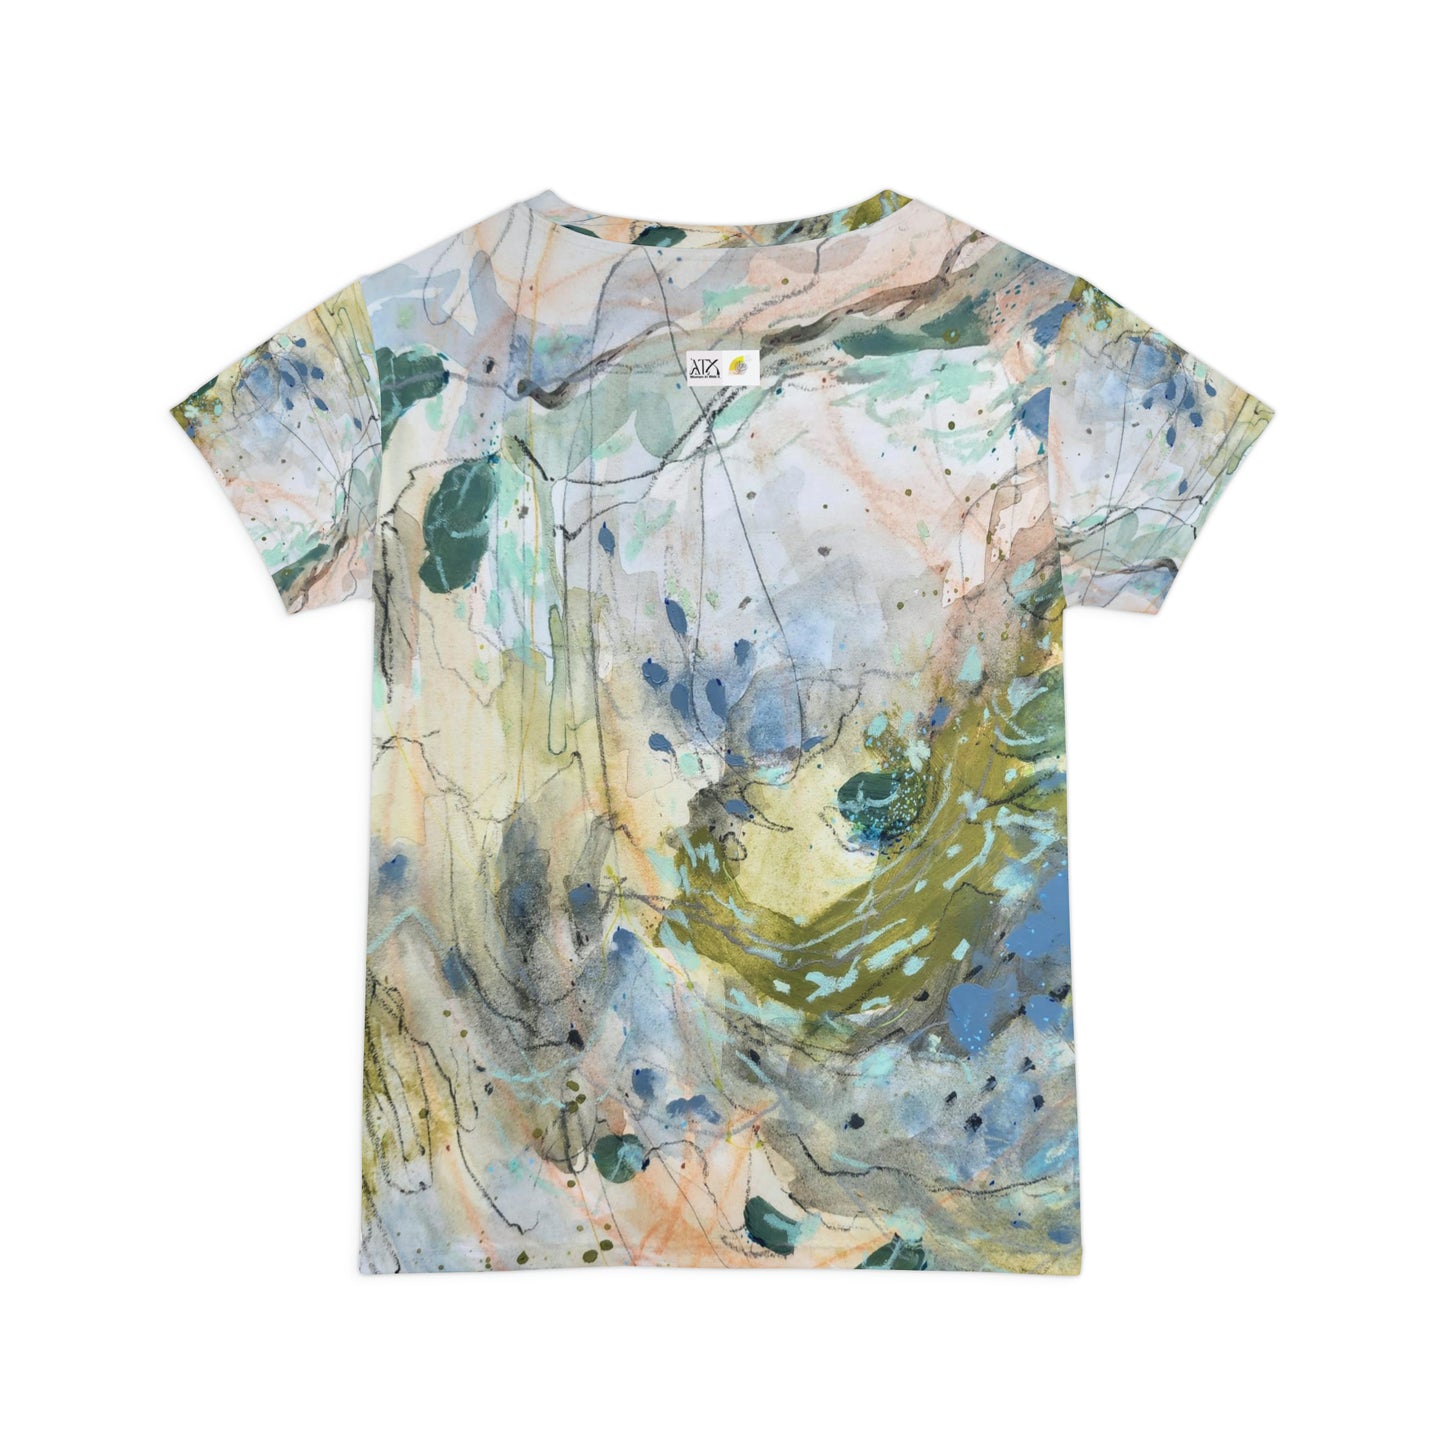 JAT | ART - Women's Short Sleeve Shirt